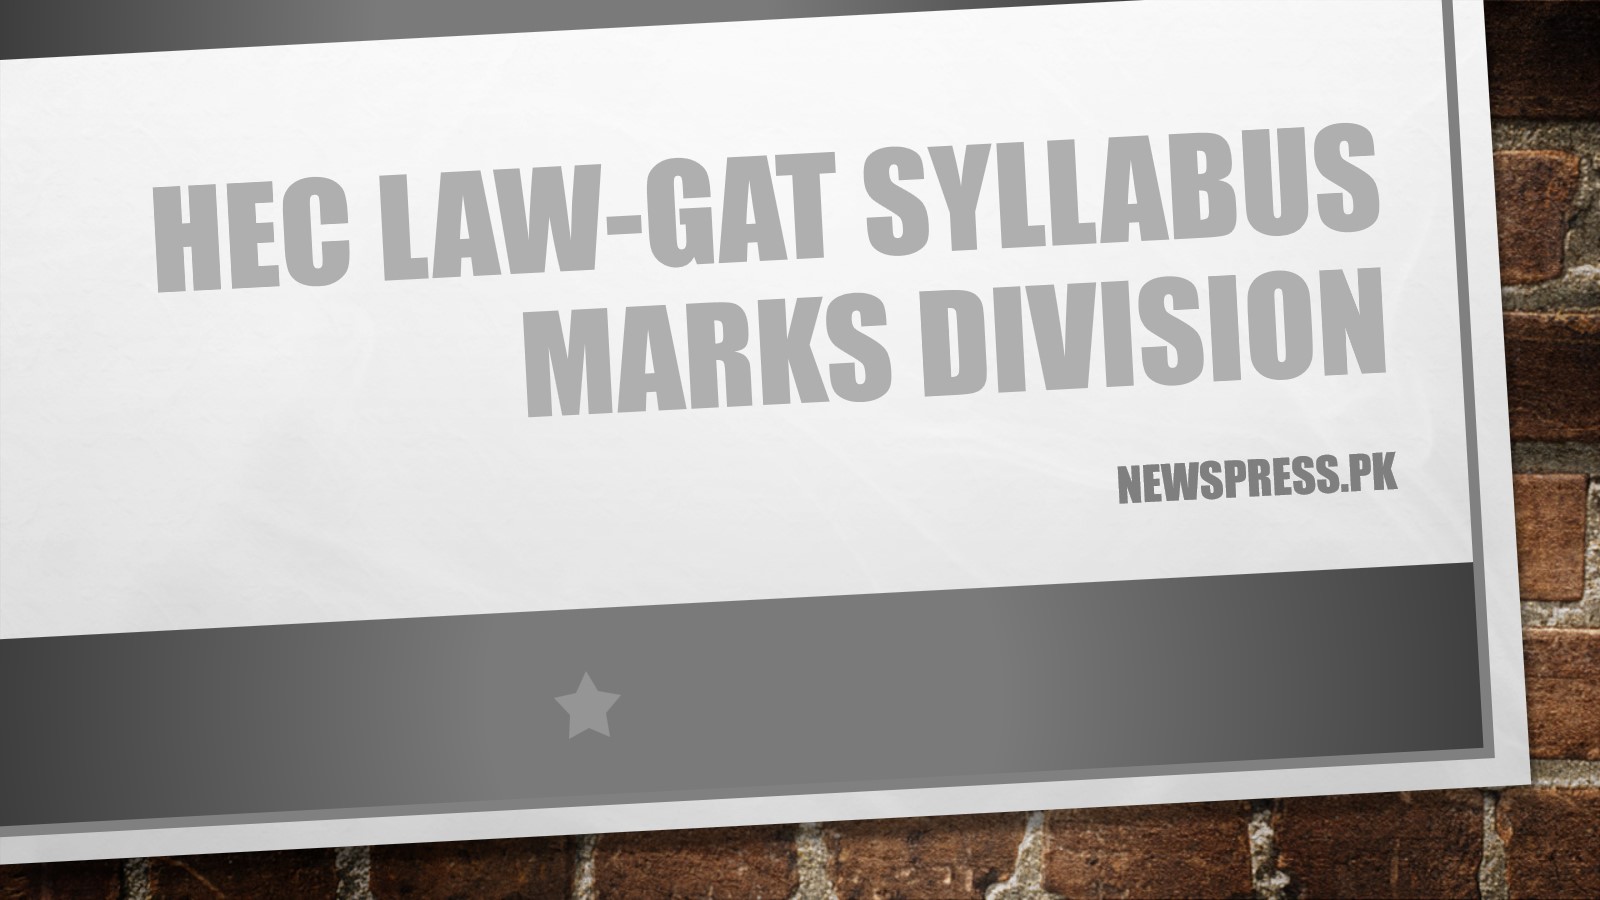 hec-law-gat-syllabus-2023-marks-division-news-press